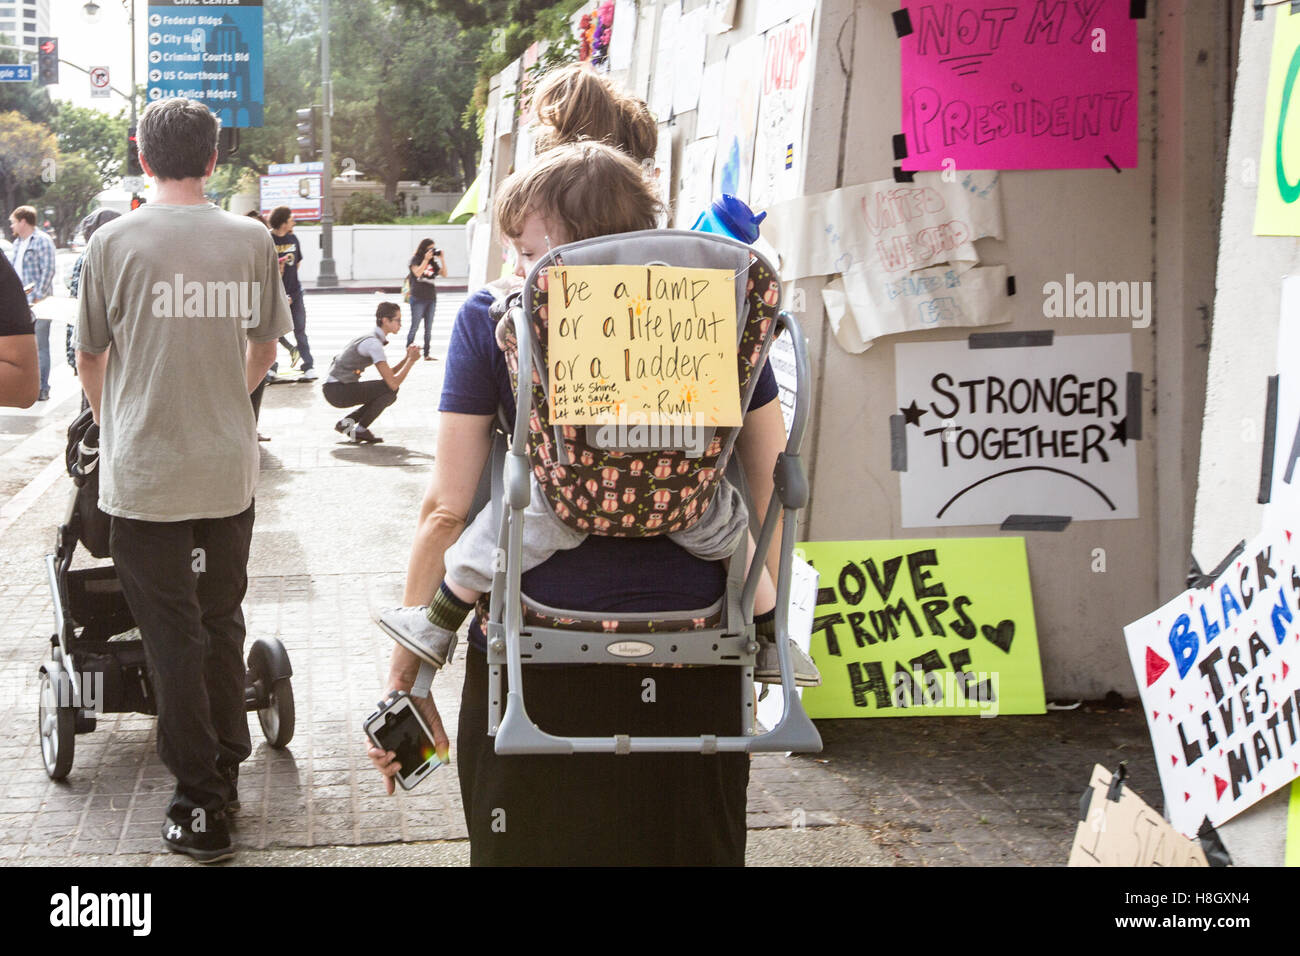 Los Angeles, Californie, USA. 12 novembre, 2016. Une mère porte son enfant avec un signe sur le dos de l'enfant transporteur au lieu mars anti-trump à Los Angeles, Californie. crédit : Sheri determan / alamy live news Banque D'Images